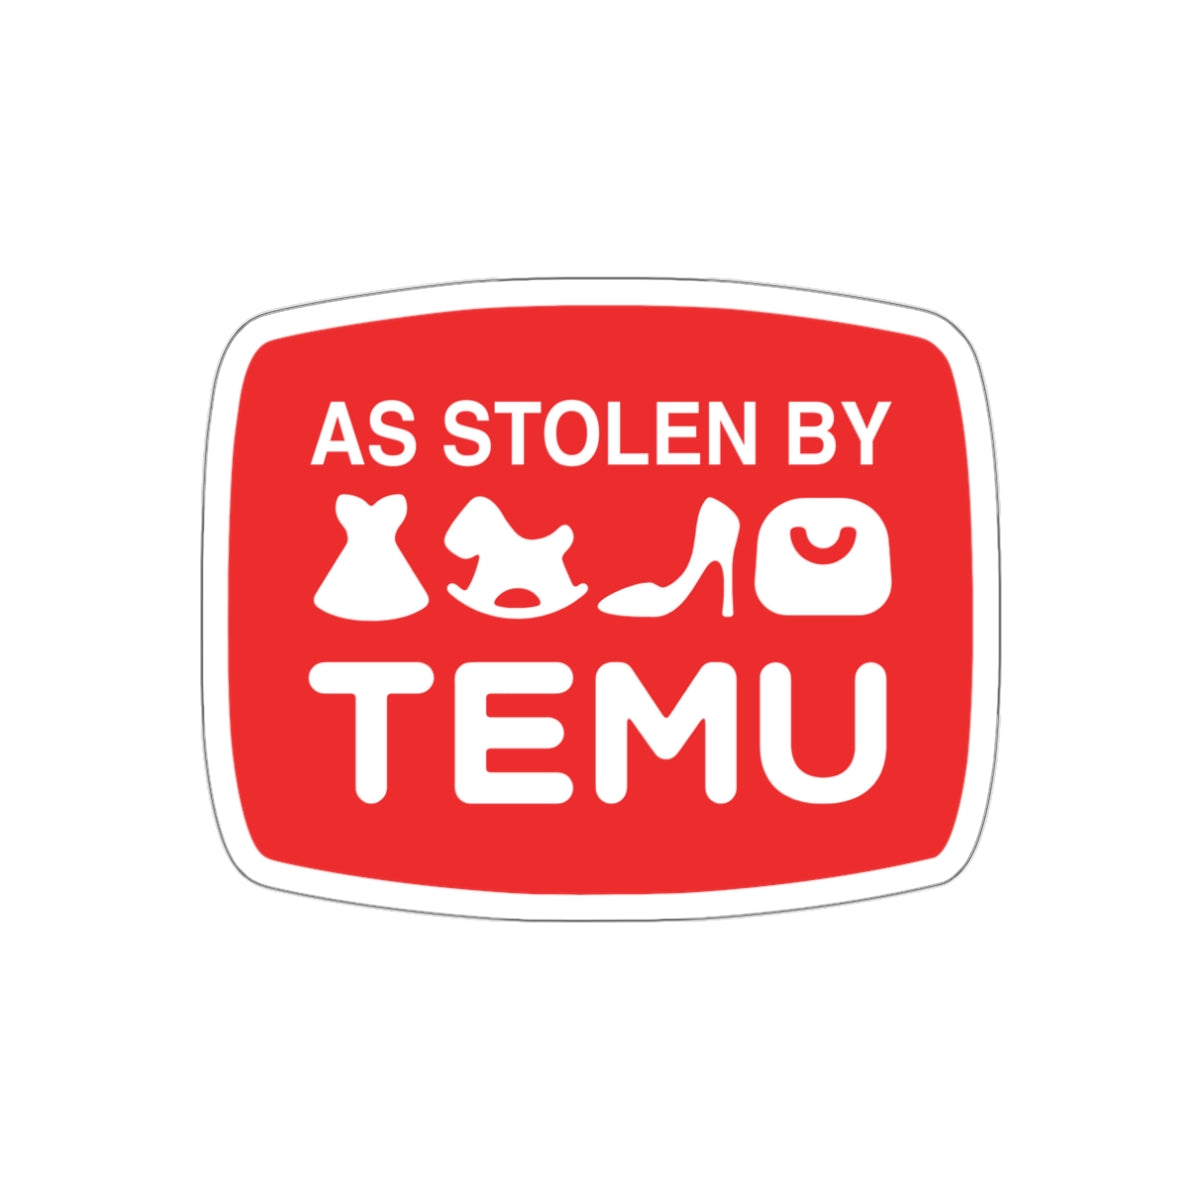 As Stolen By Temu vinyl sticker